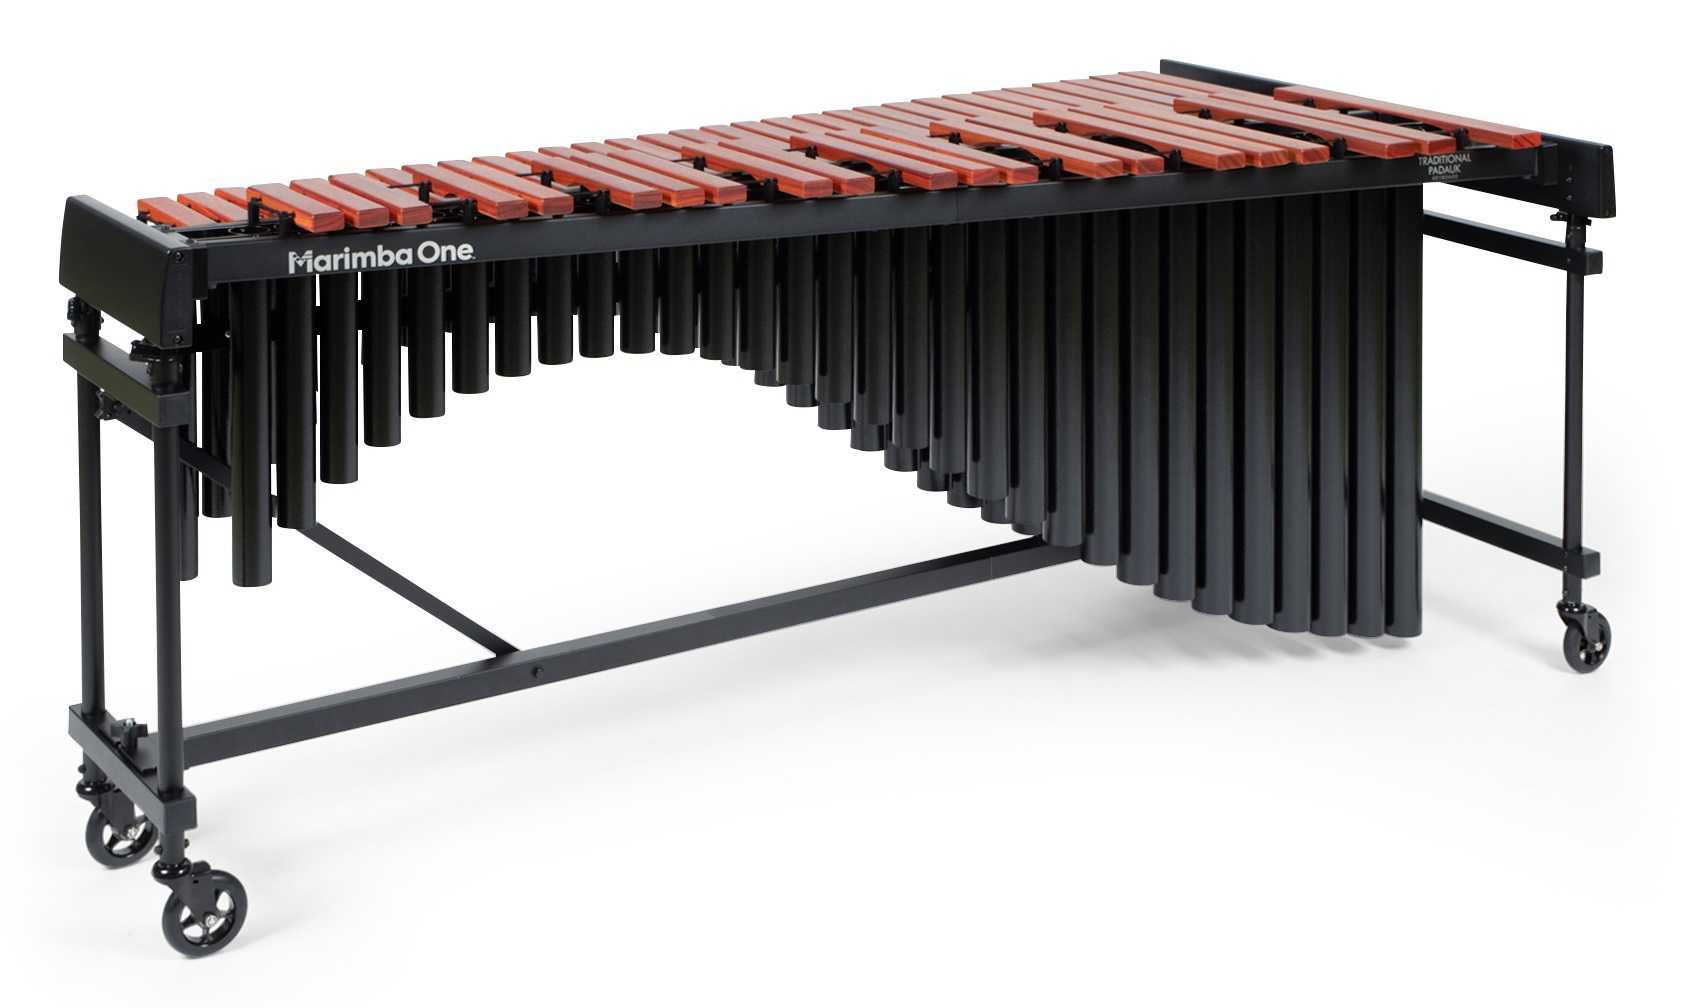 M1 4.3 Octave Padauk Educational Marimba, Classic Resonators Enhanced Keyboard